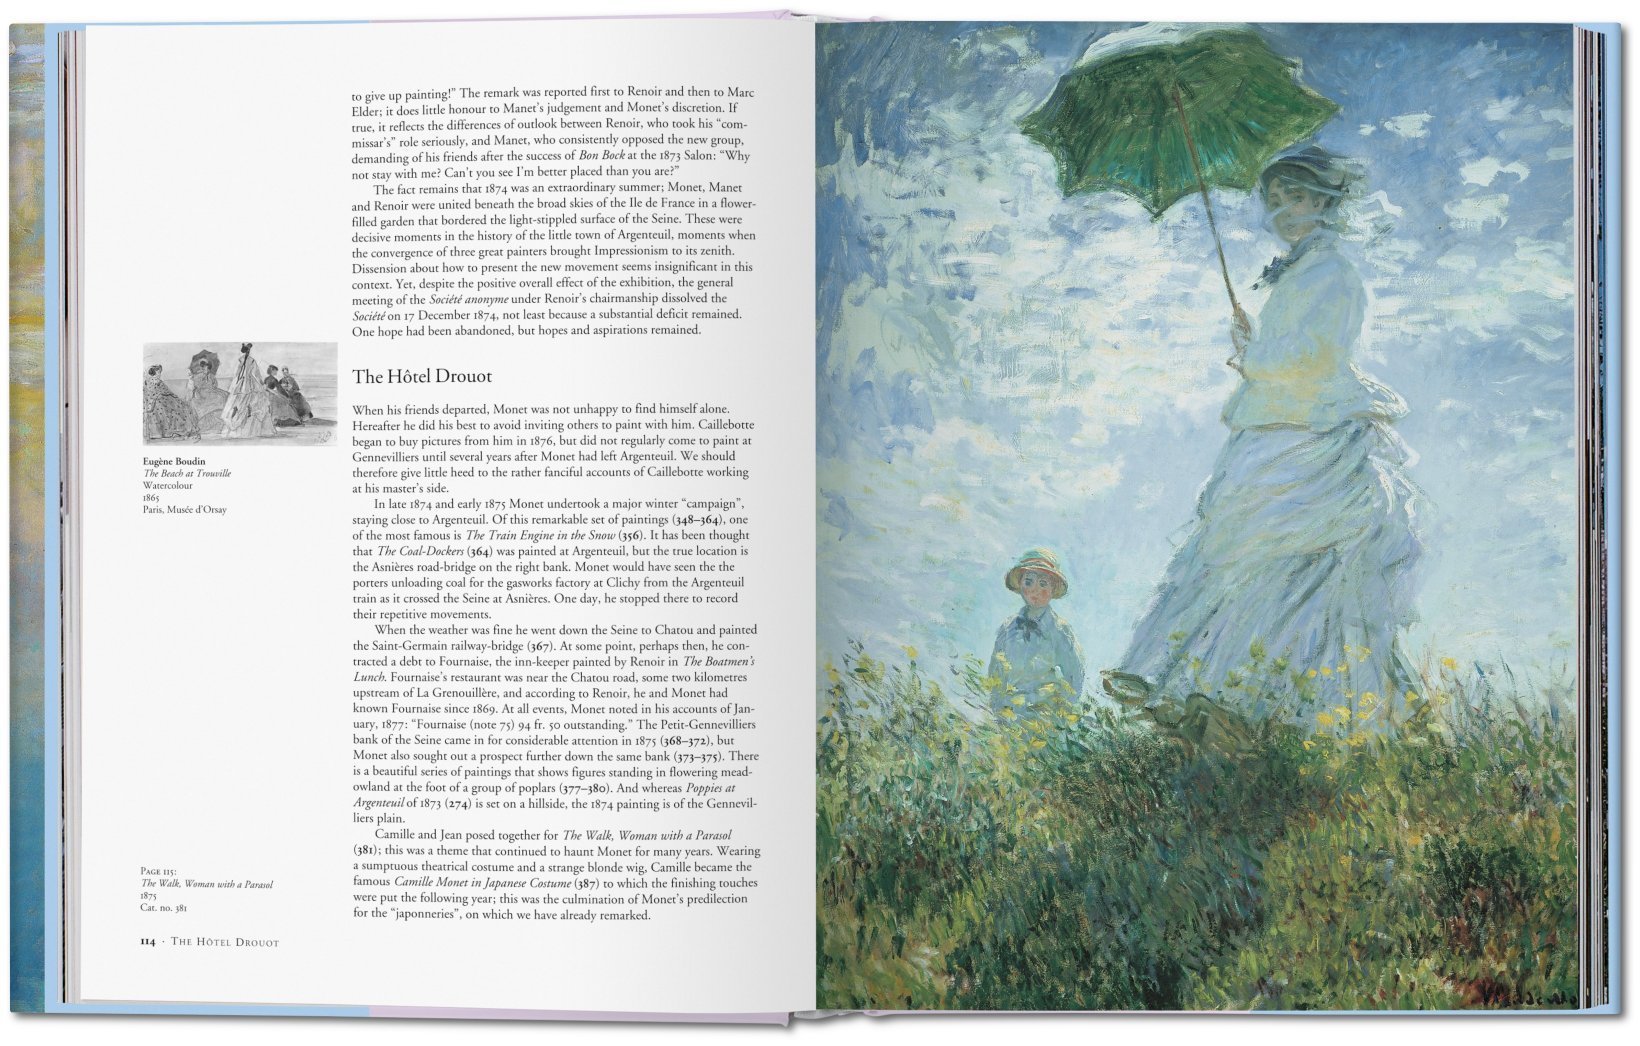 Claude Monet oder Der Triumph des Impressionismus